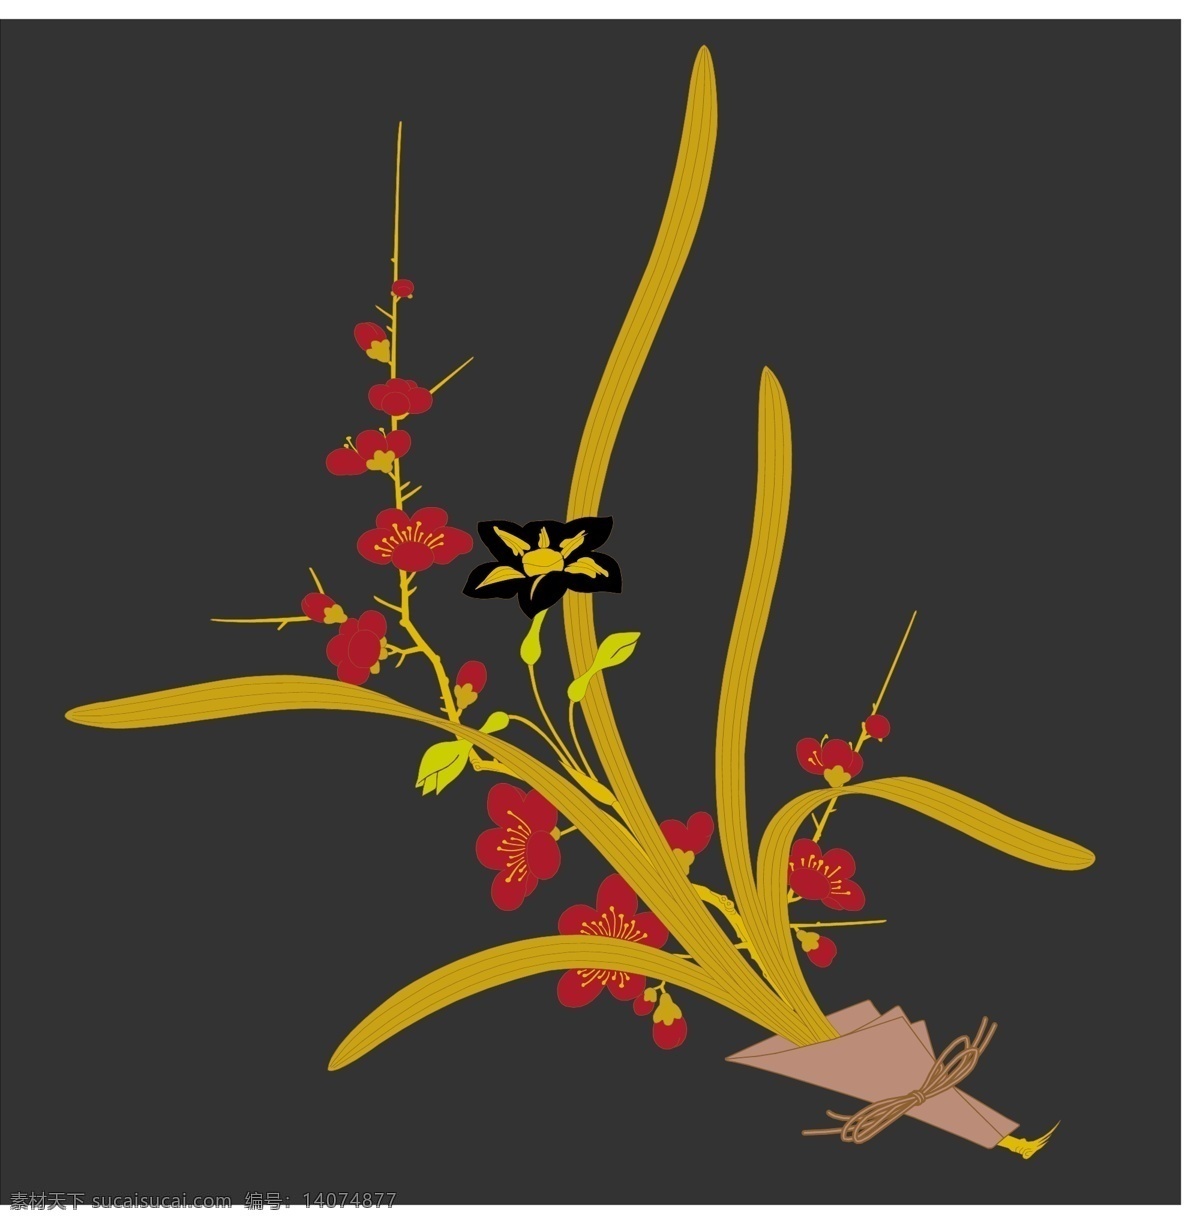 简约 花朵 装饰 图 设计素材 设计元素 水仙花 蝴蝶 红色 黄色花朵 矢量素材 装饰素材 装饰图案